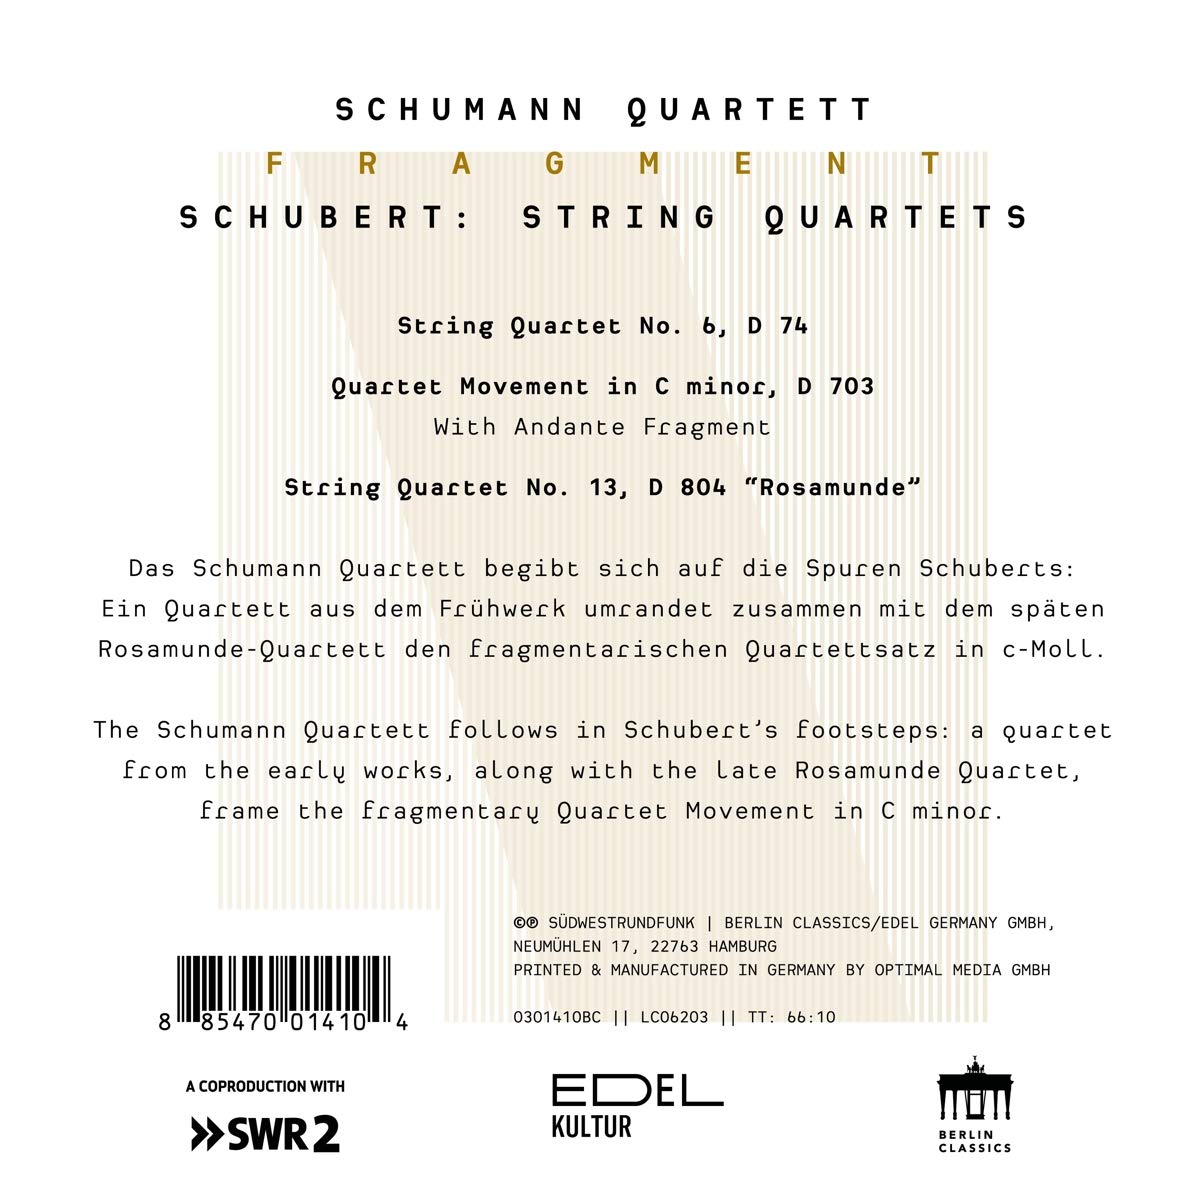 Schumann Quartett 슈베르트: 현악 4중주 6번, 13번 '로자문데' (Schubert: String Quartets D74, D703, D804)